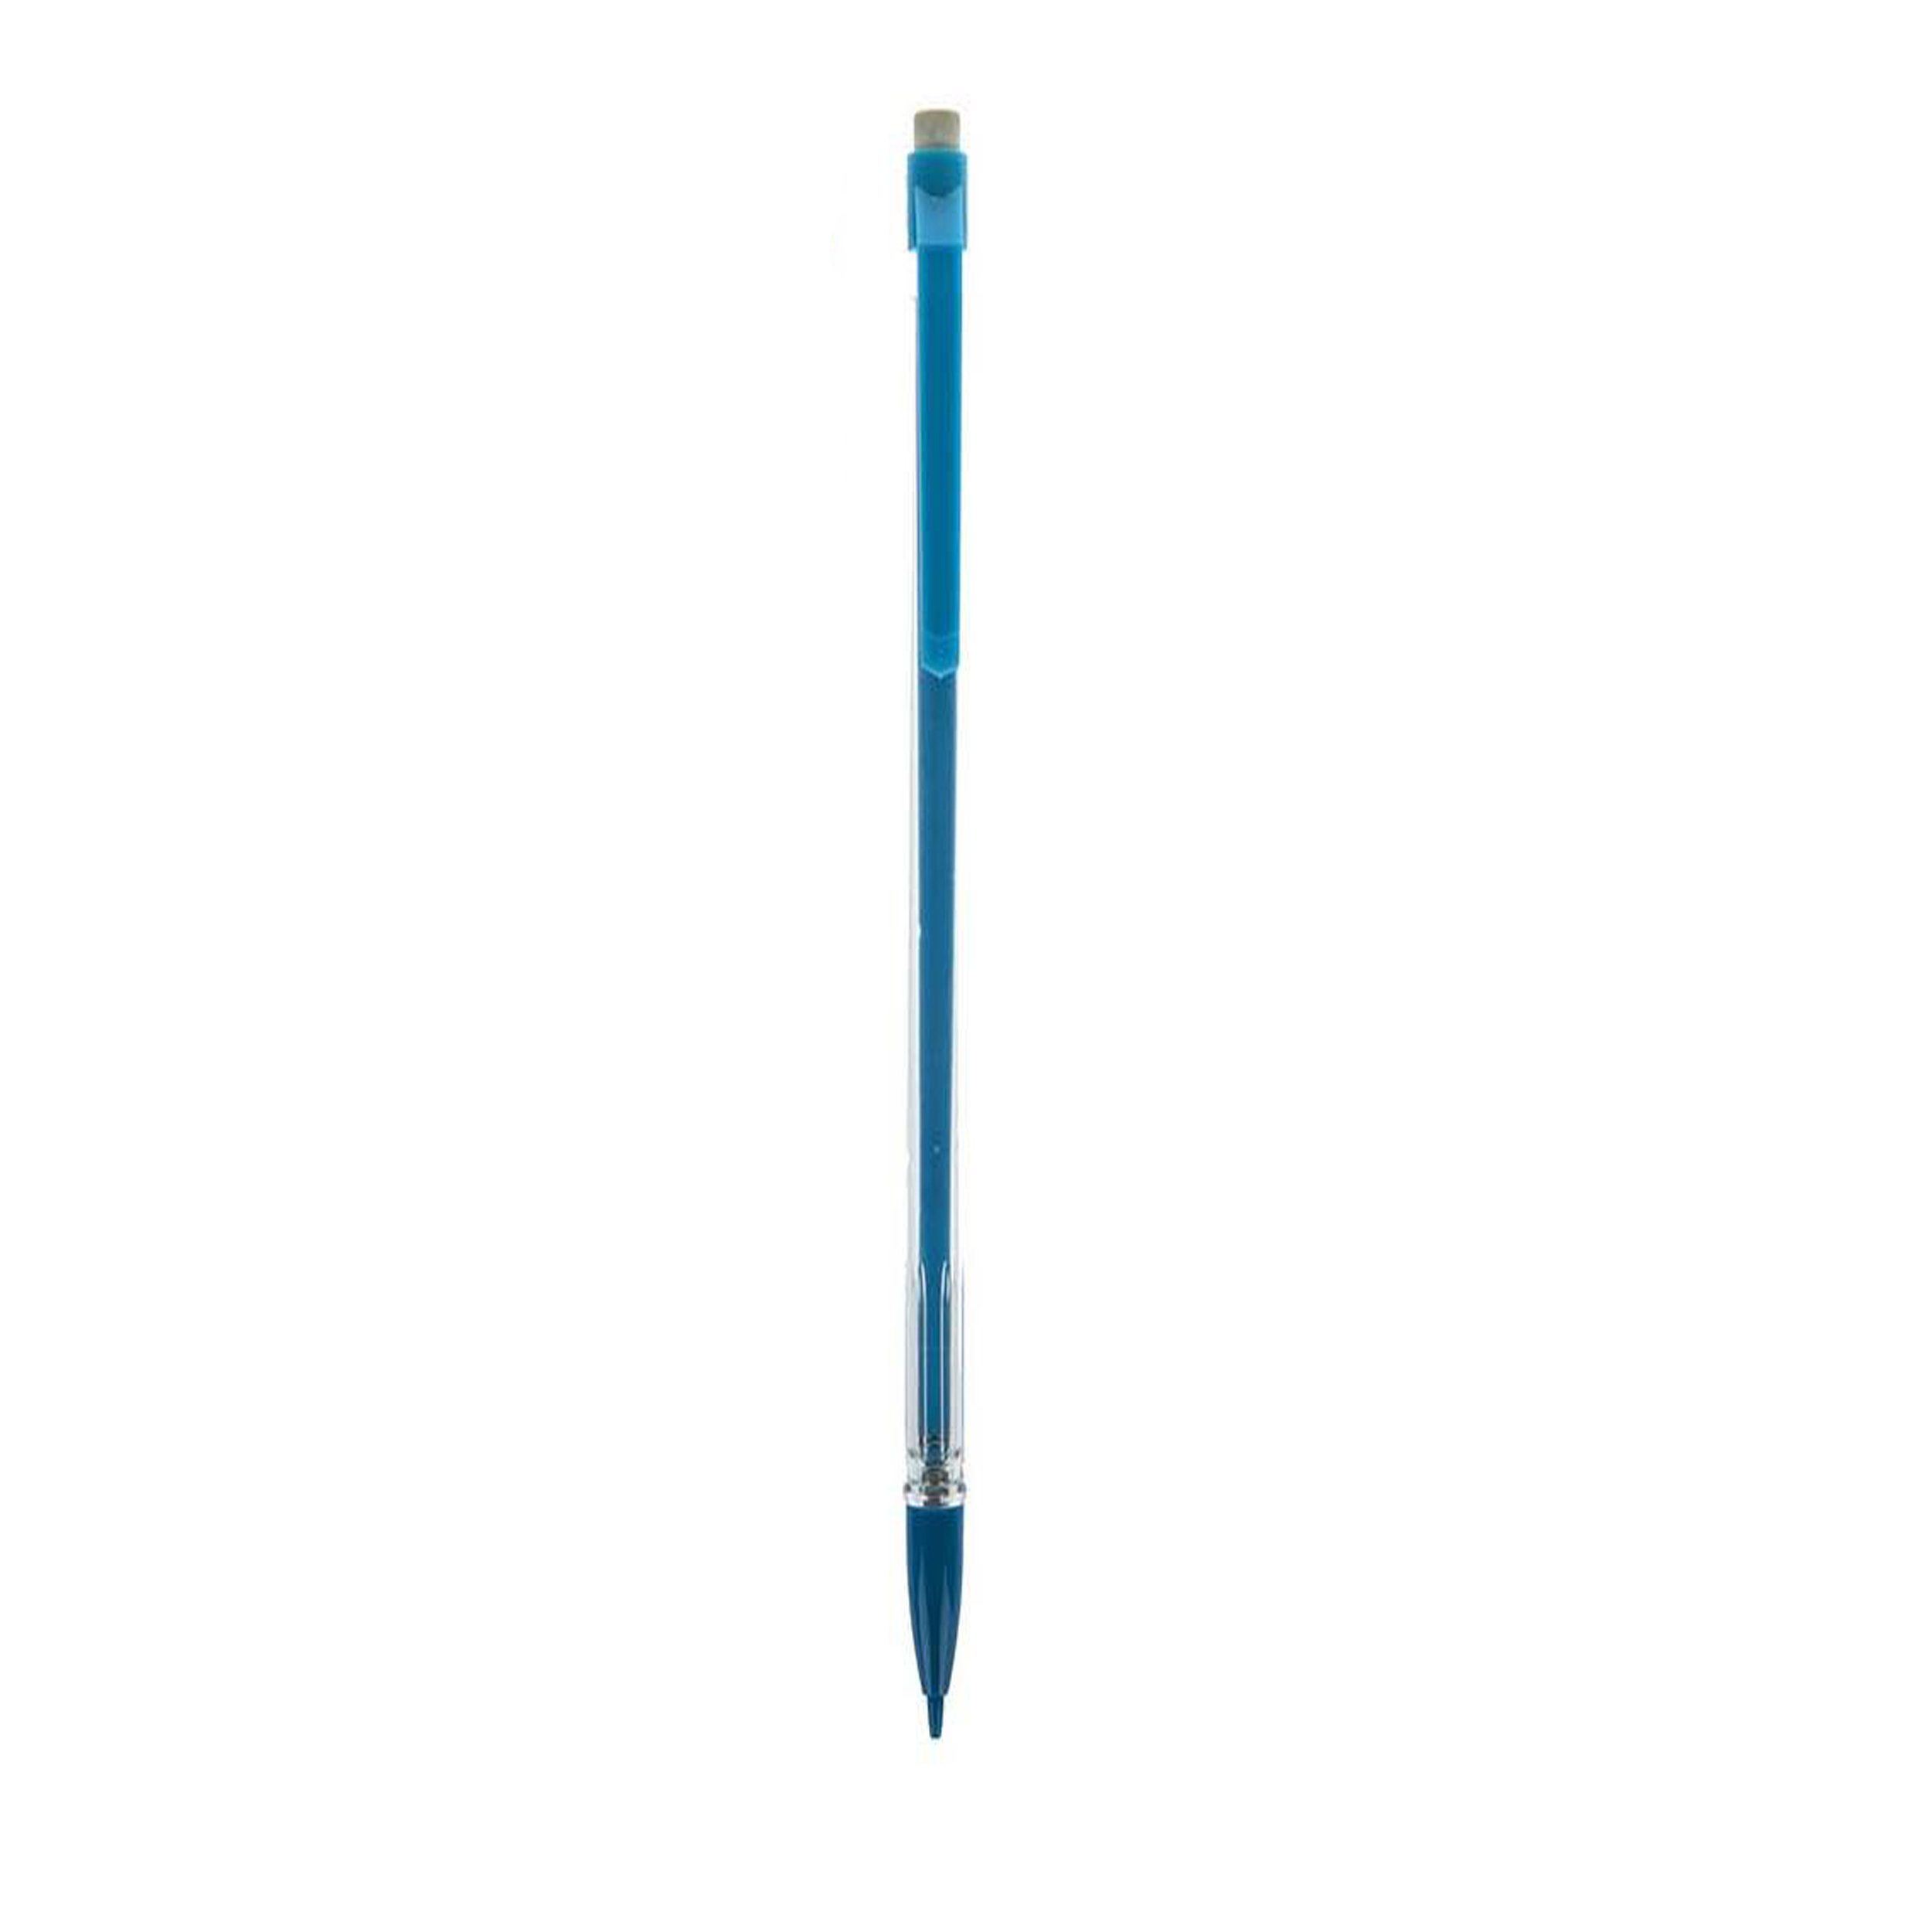 مداد نوکی 0.5 میلی متری مدل Sn-0054 بسته 4 عددی